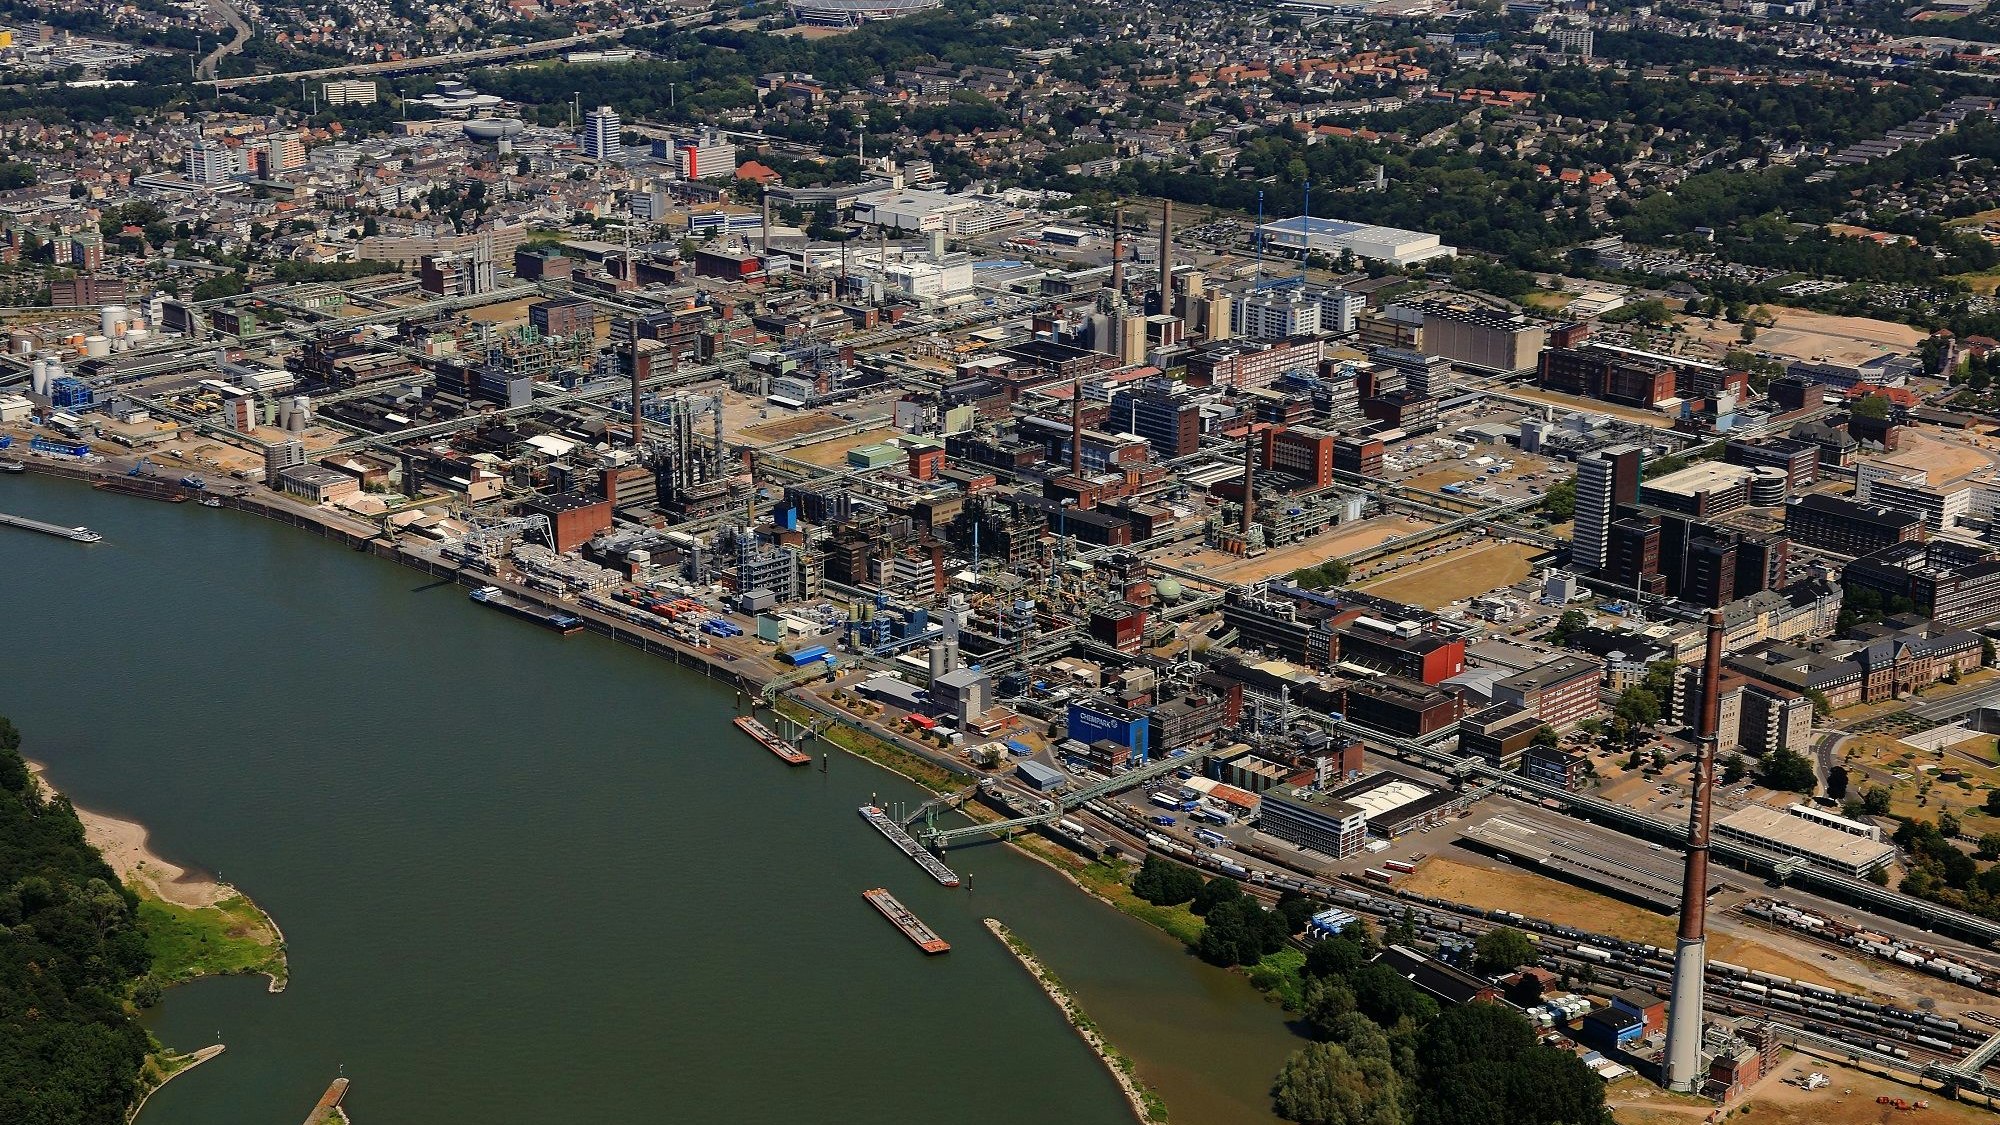 Der Chempark Leverkusen mit dem Rhein im Vordergrund aus der Luft